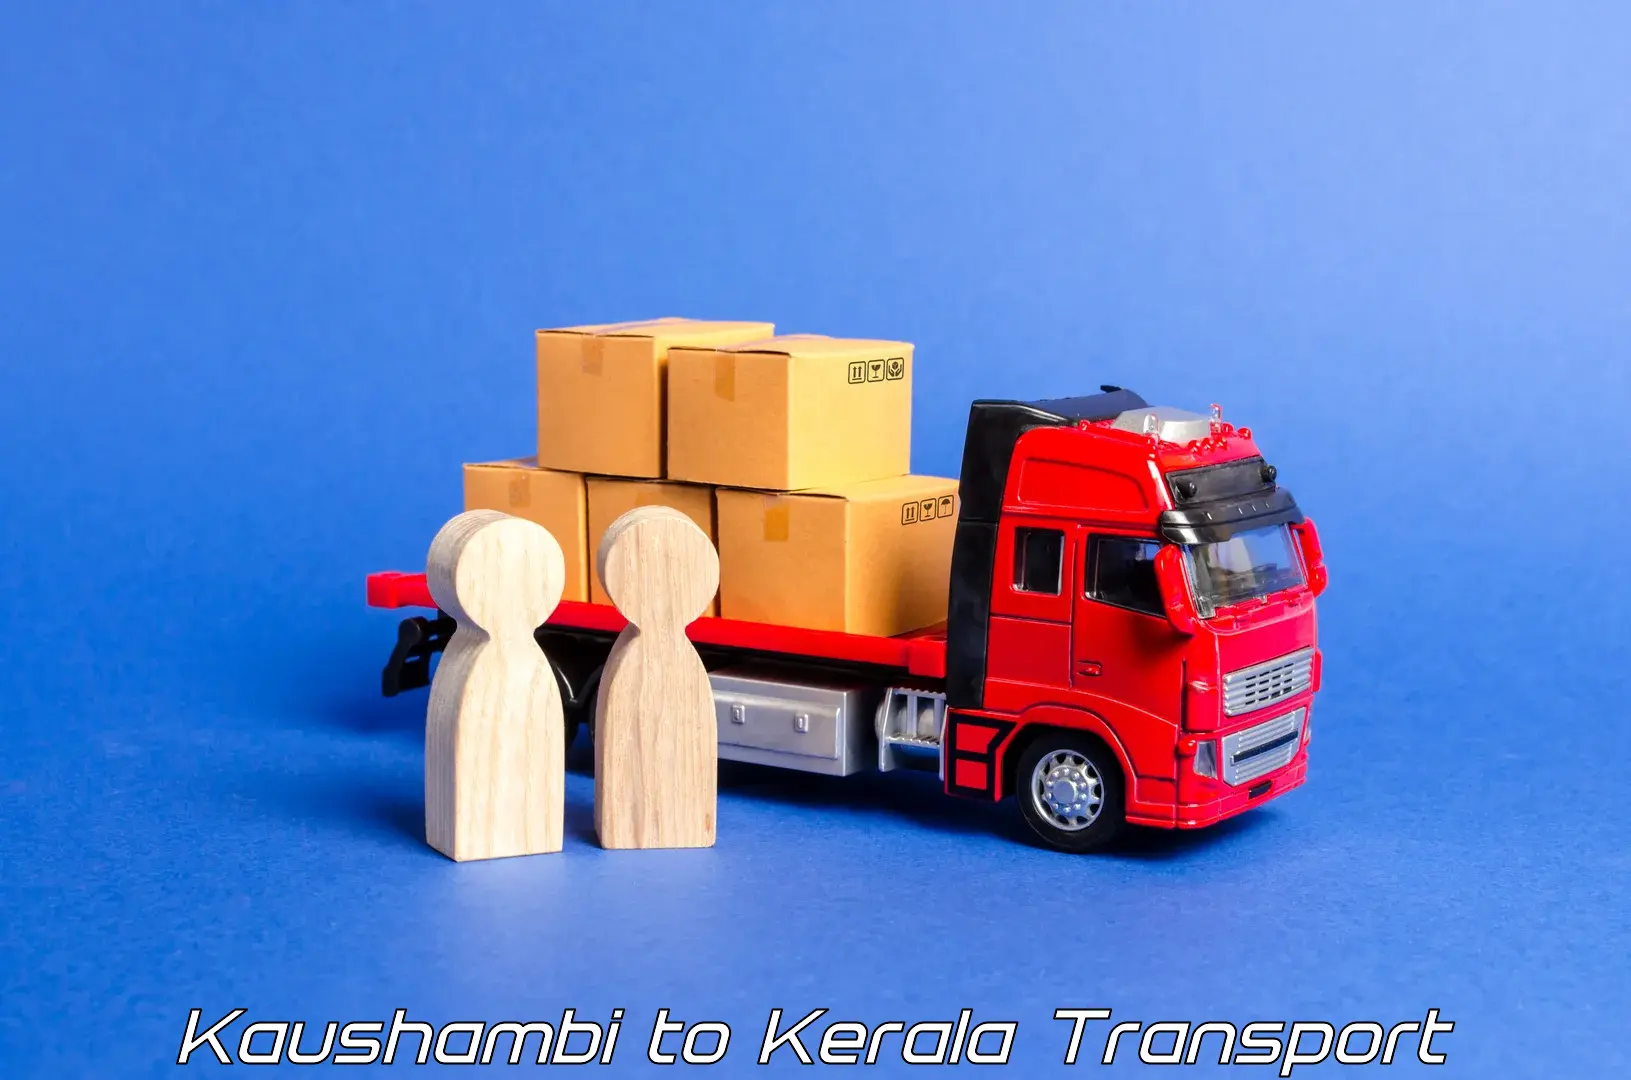 Express transport services Kaushambi to Kiliyanthara